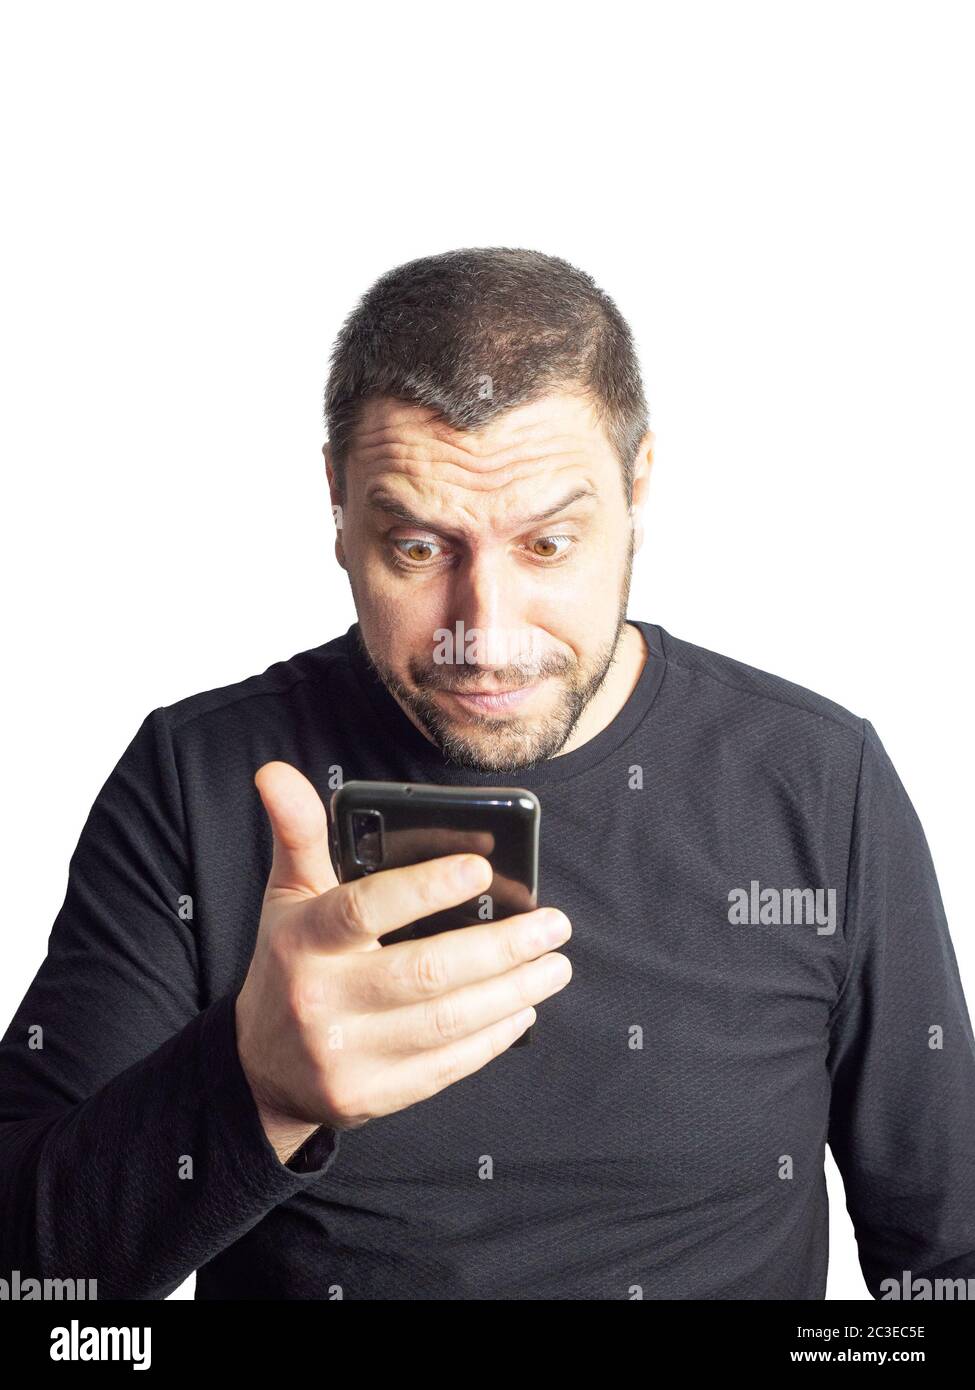 Ein Mann mit Bart und in einem schwarzen Pullover schaut mit erhobener Augenbraue und wulstigen Augen auf das Telefon. Stockfoto